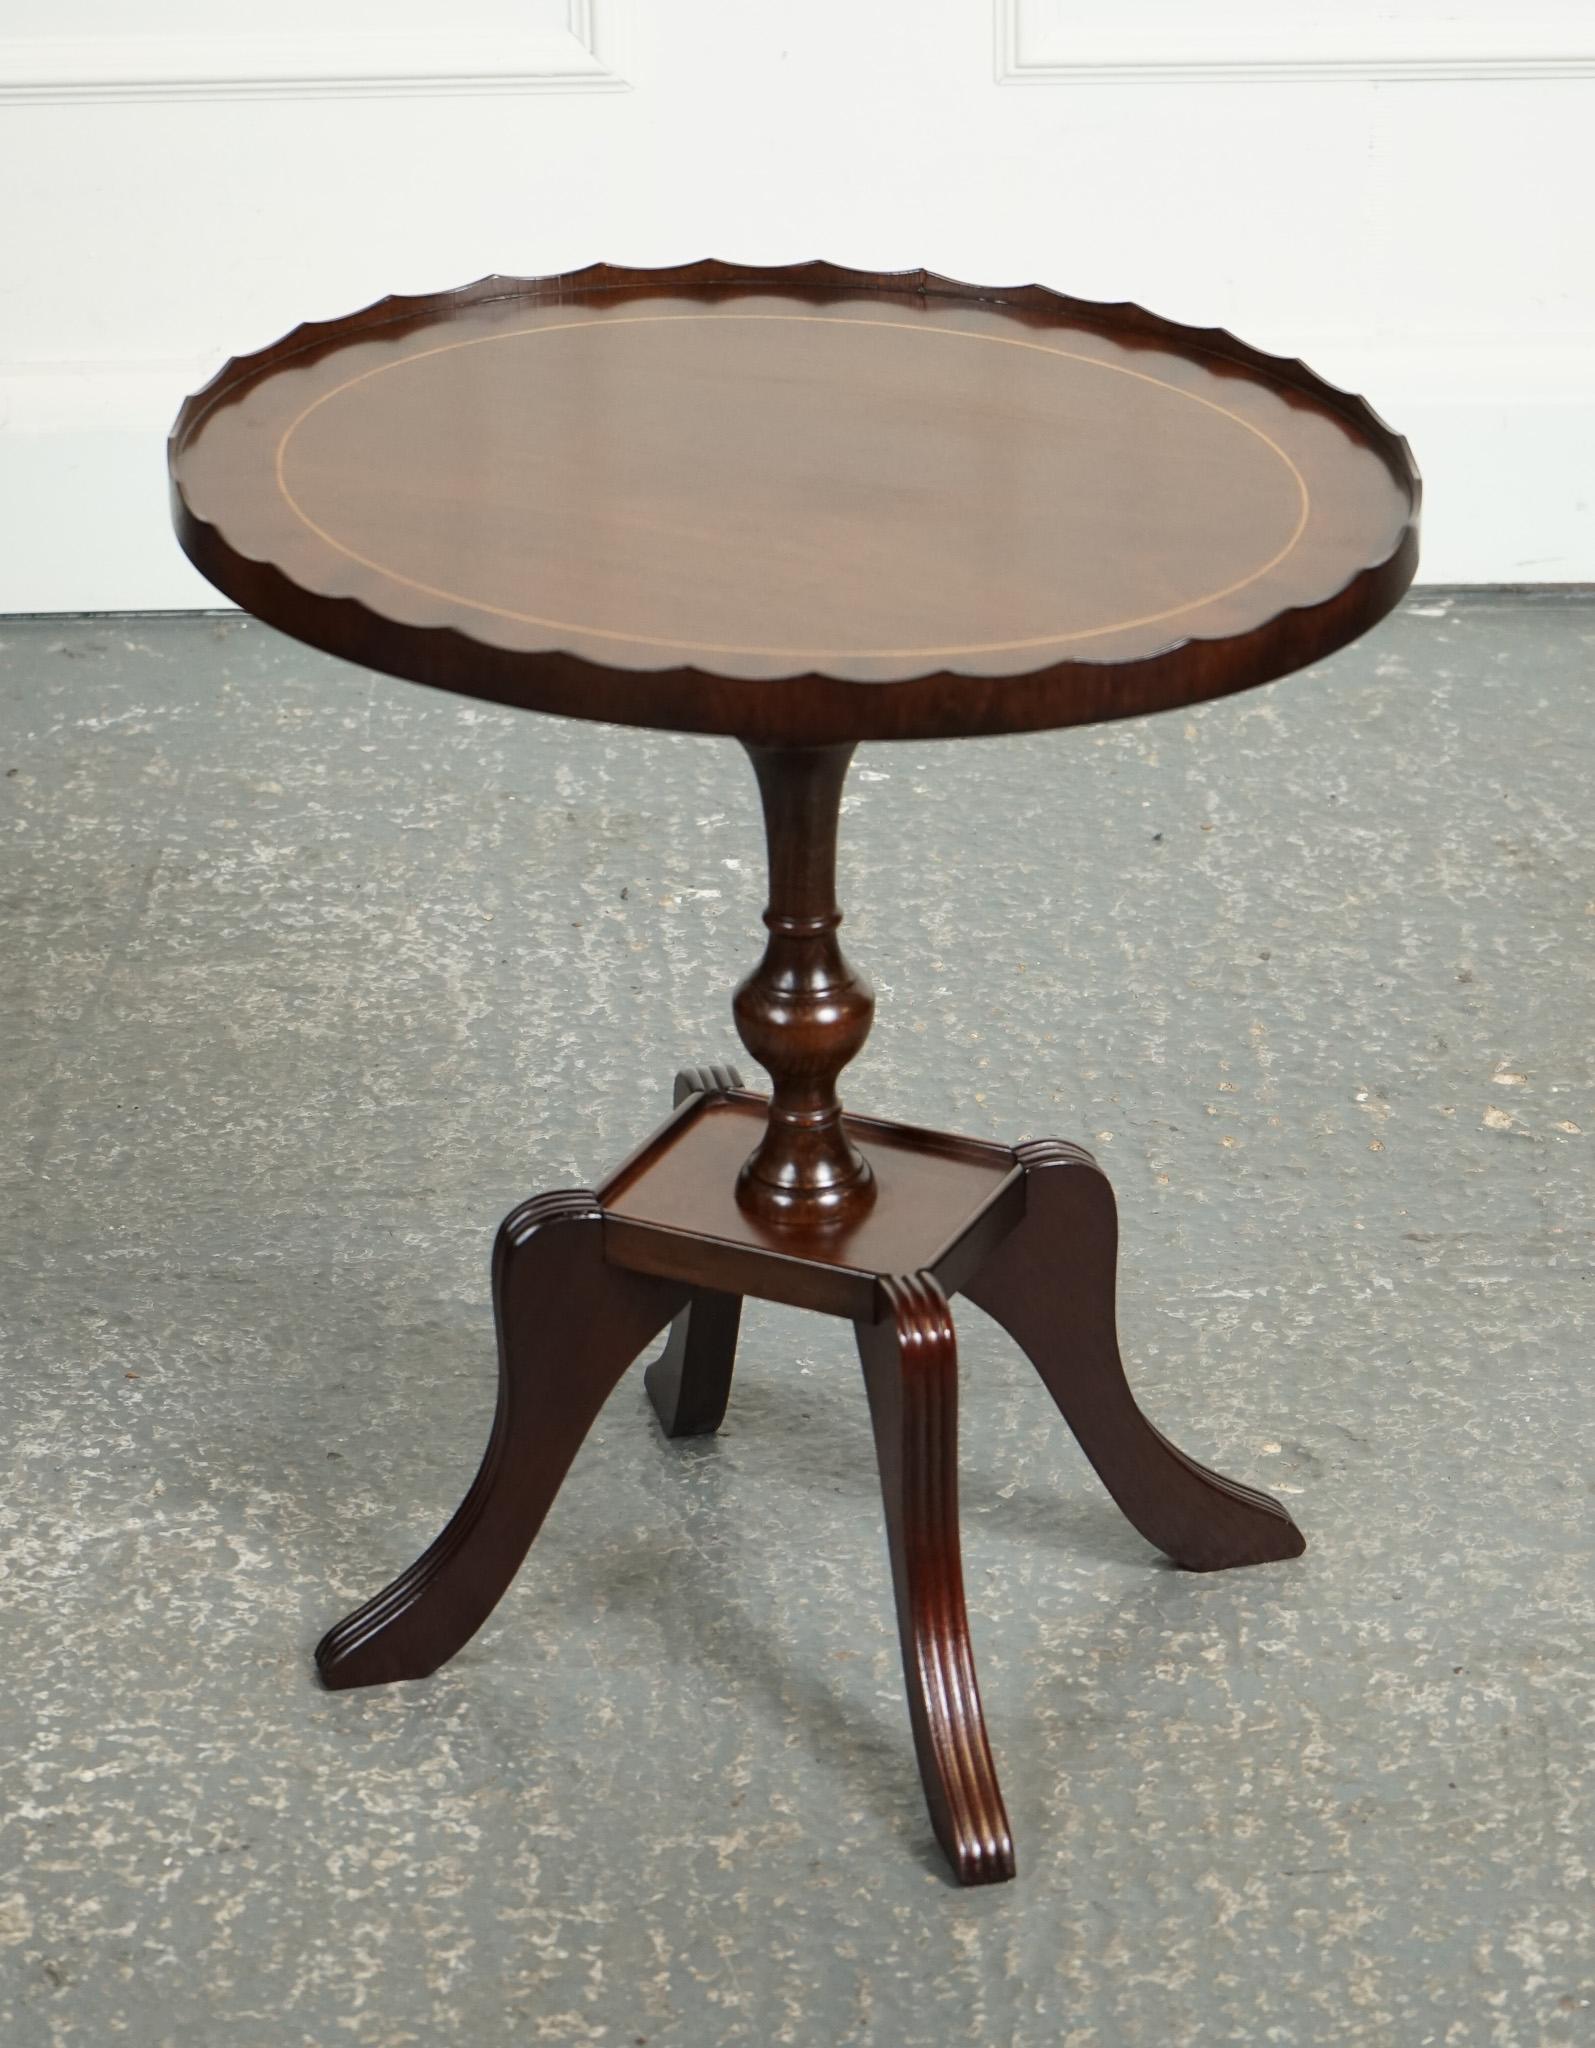 
Wir freuen uns, diesen ovalen Beistelltisch aus geflammtem Hartholz zum Verkauf anbieten zu können. Er ist ein stilvolles und elegantes Möbelstück, das typischerweise aus hochwertigem Hartholz gefertigt wird.

Der Tisch hat eine einzigartige ovale